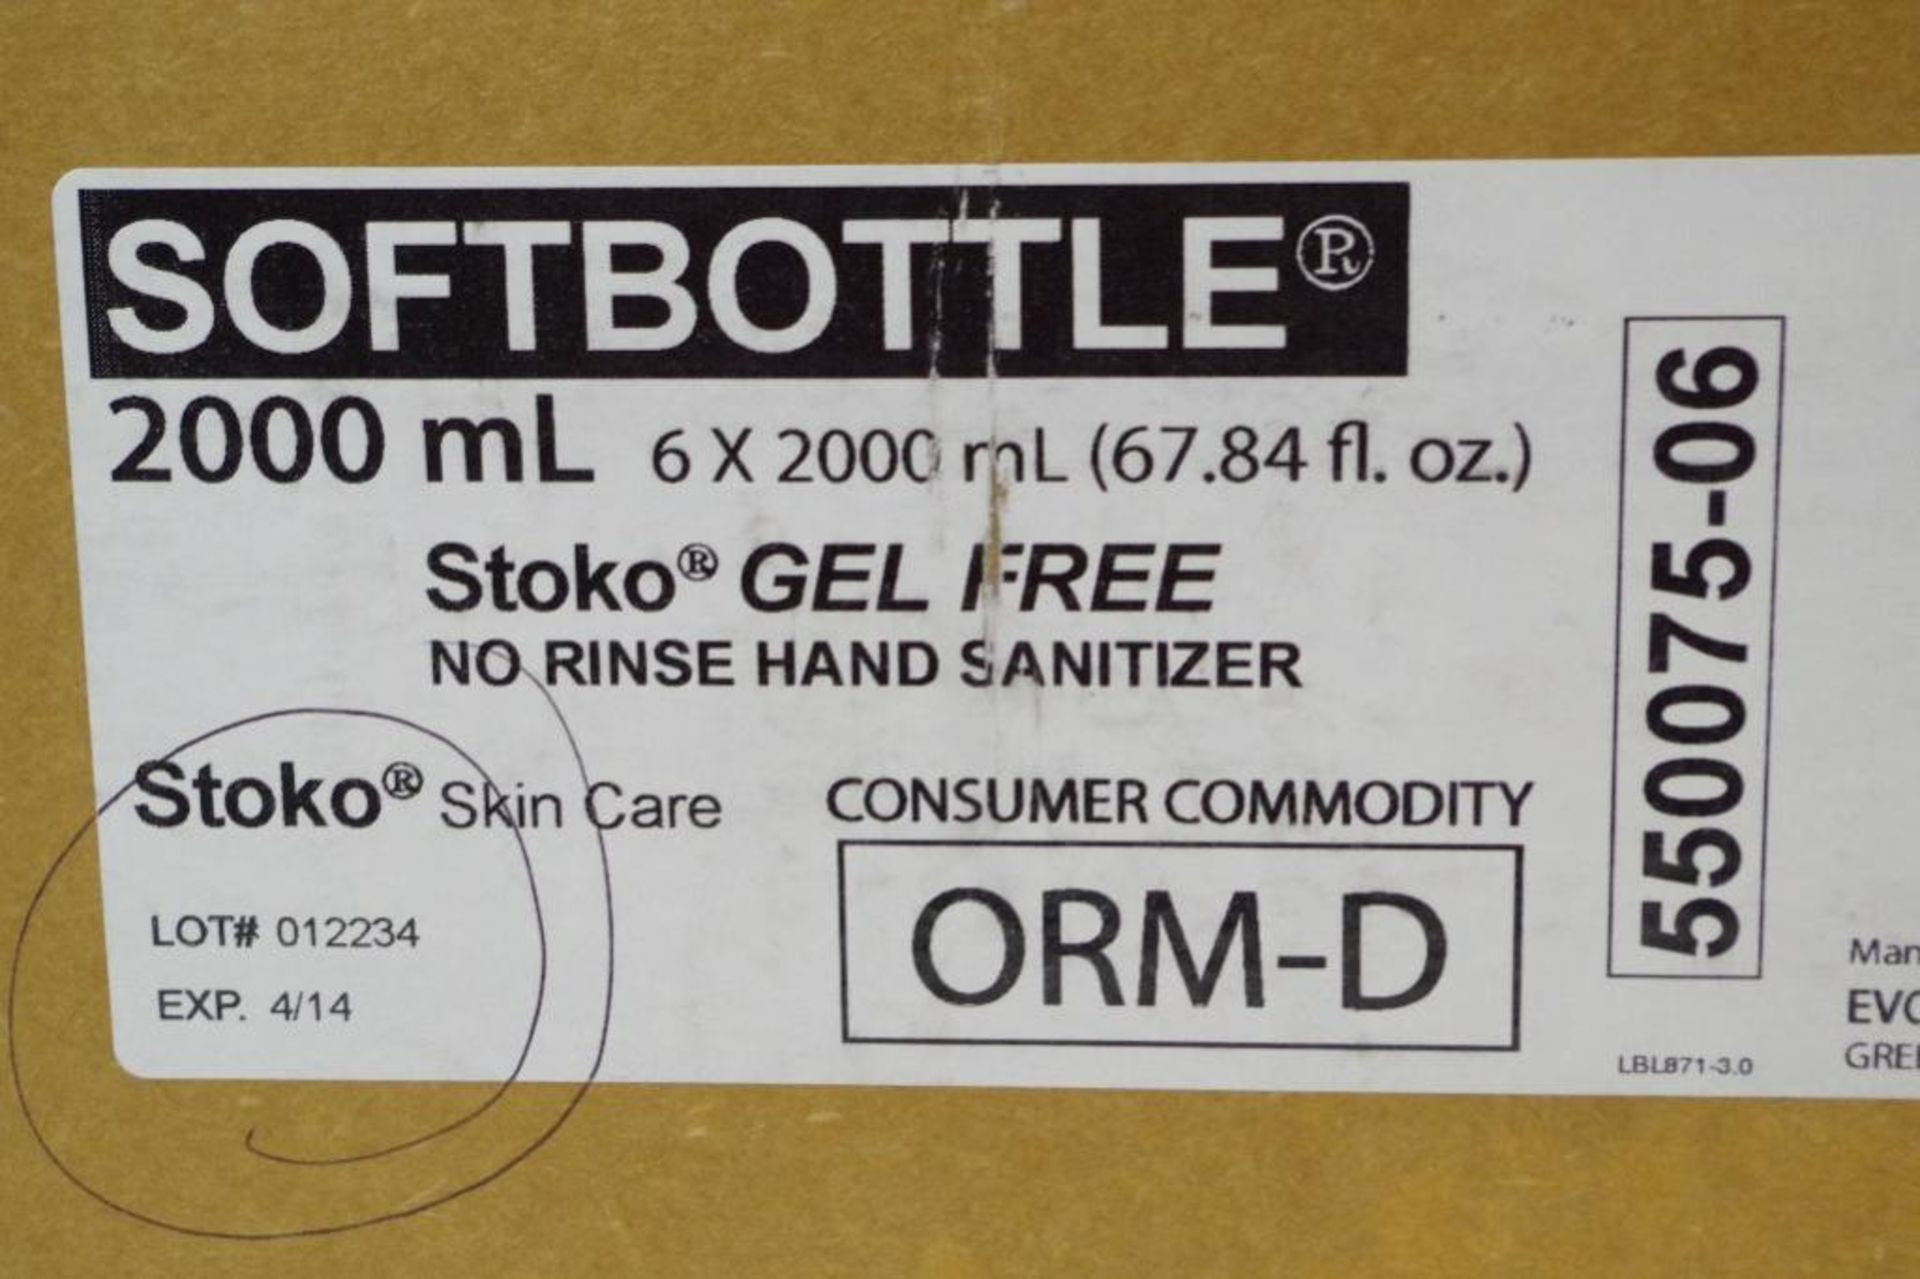 Case of STOKO Gel Free No Rinse Hand Sanitizer 2000 ml. (1 Case of 6 Bottles) - Image 2 of 4